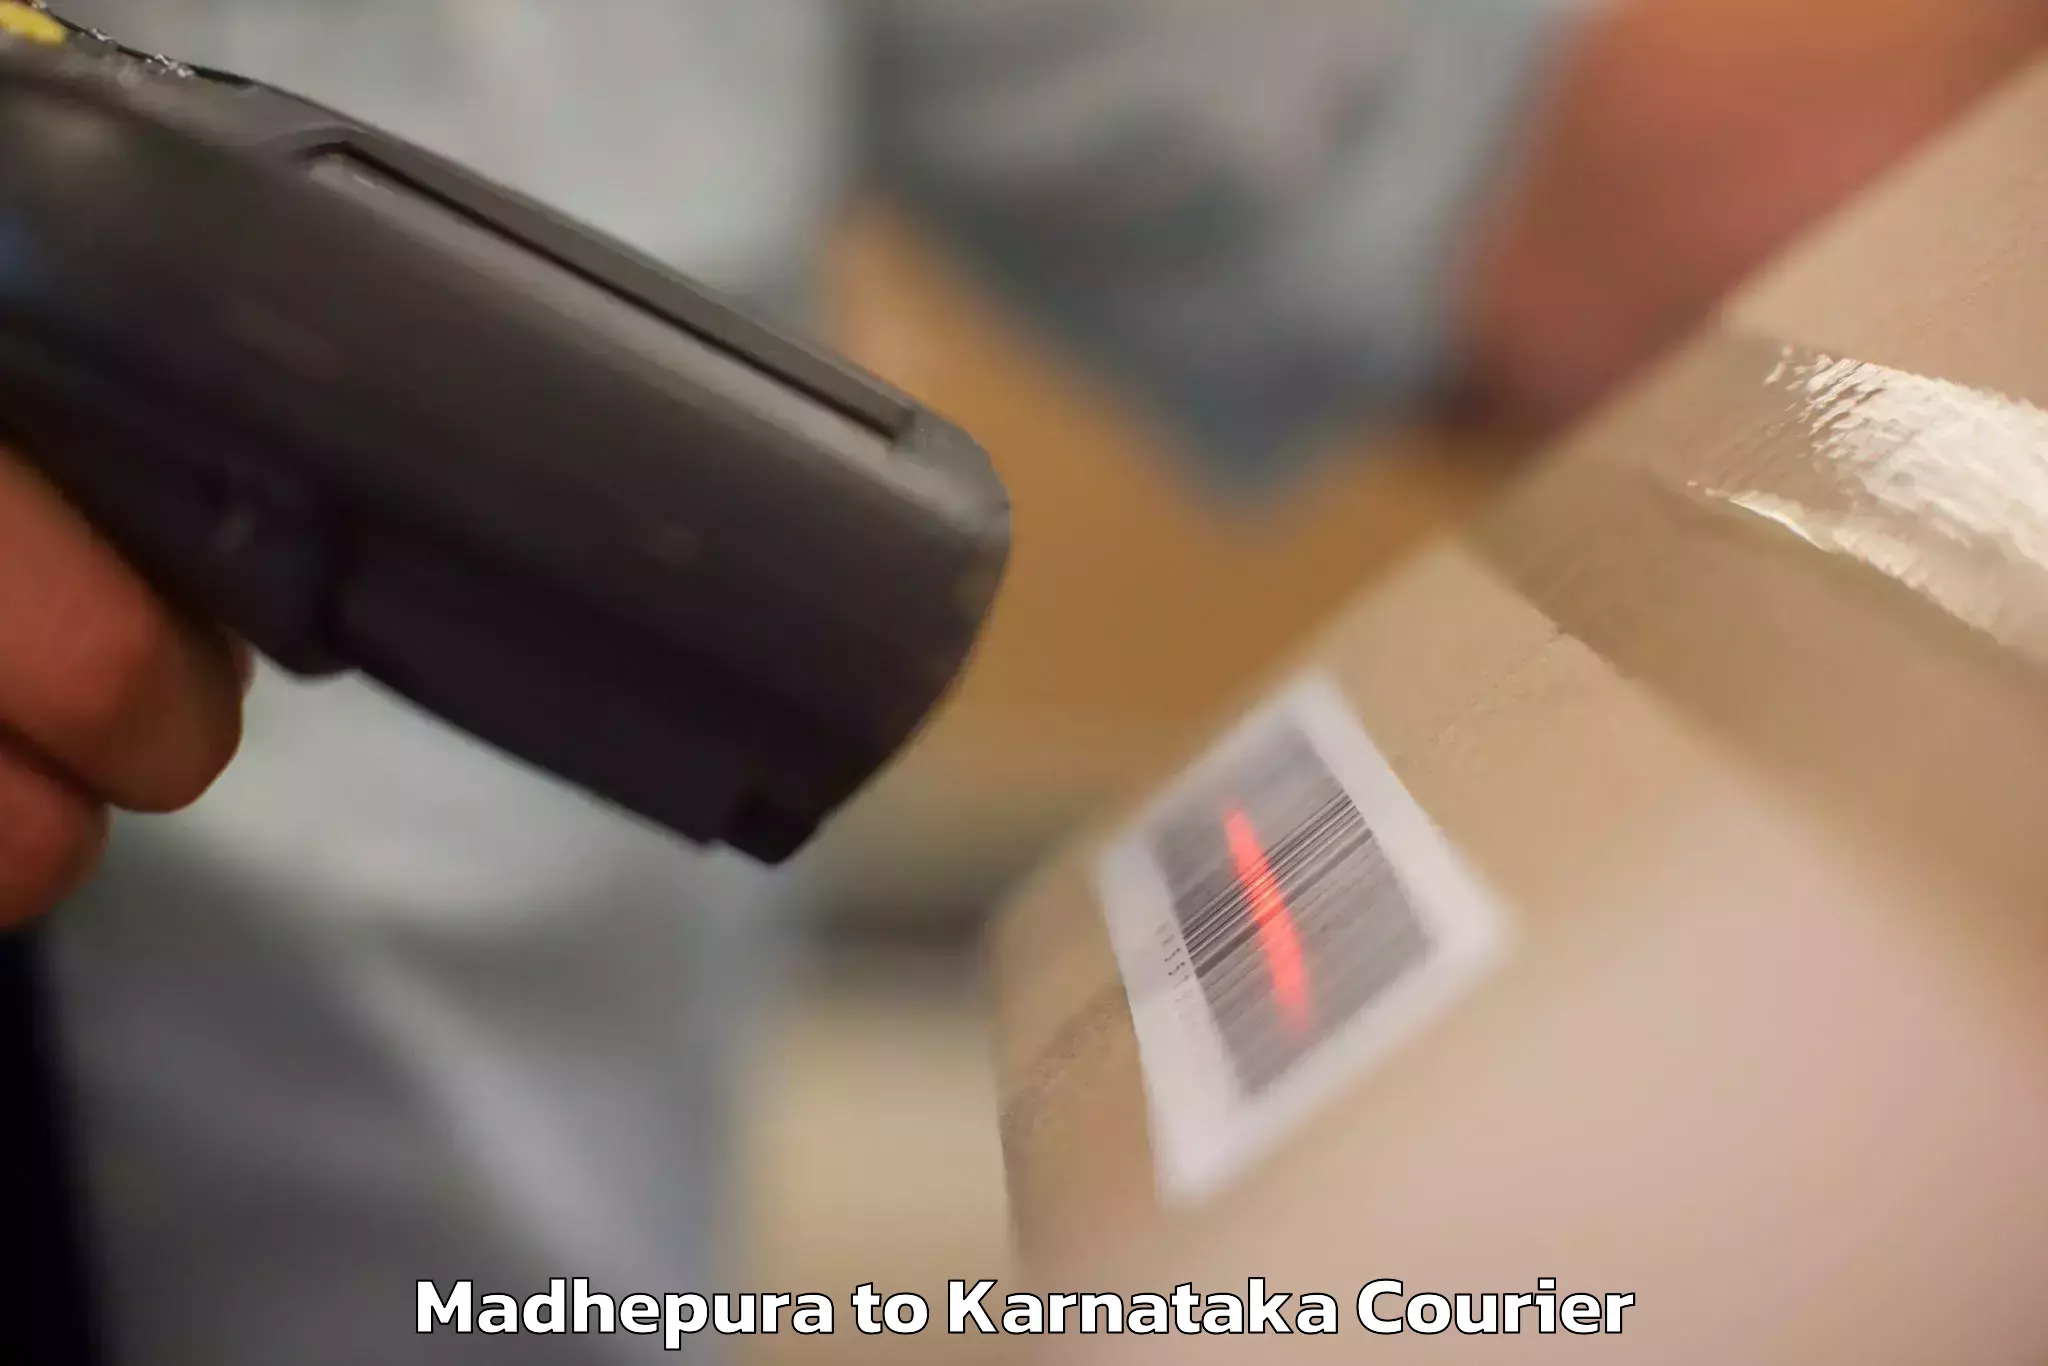 Luggage forwarding service Madhepura to Harohalli